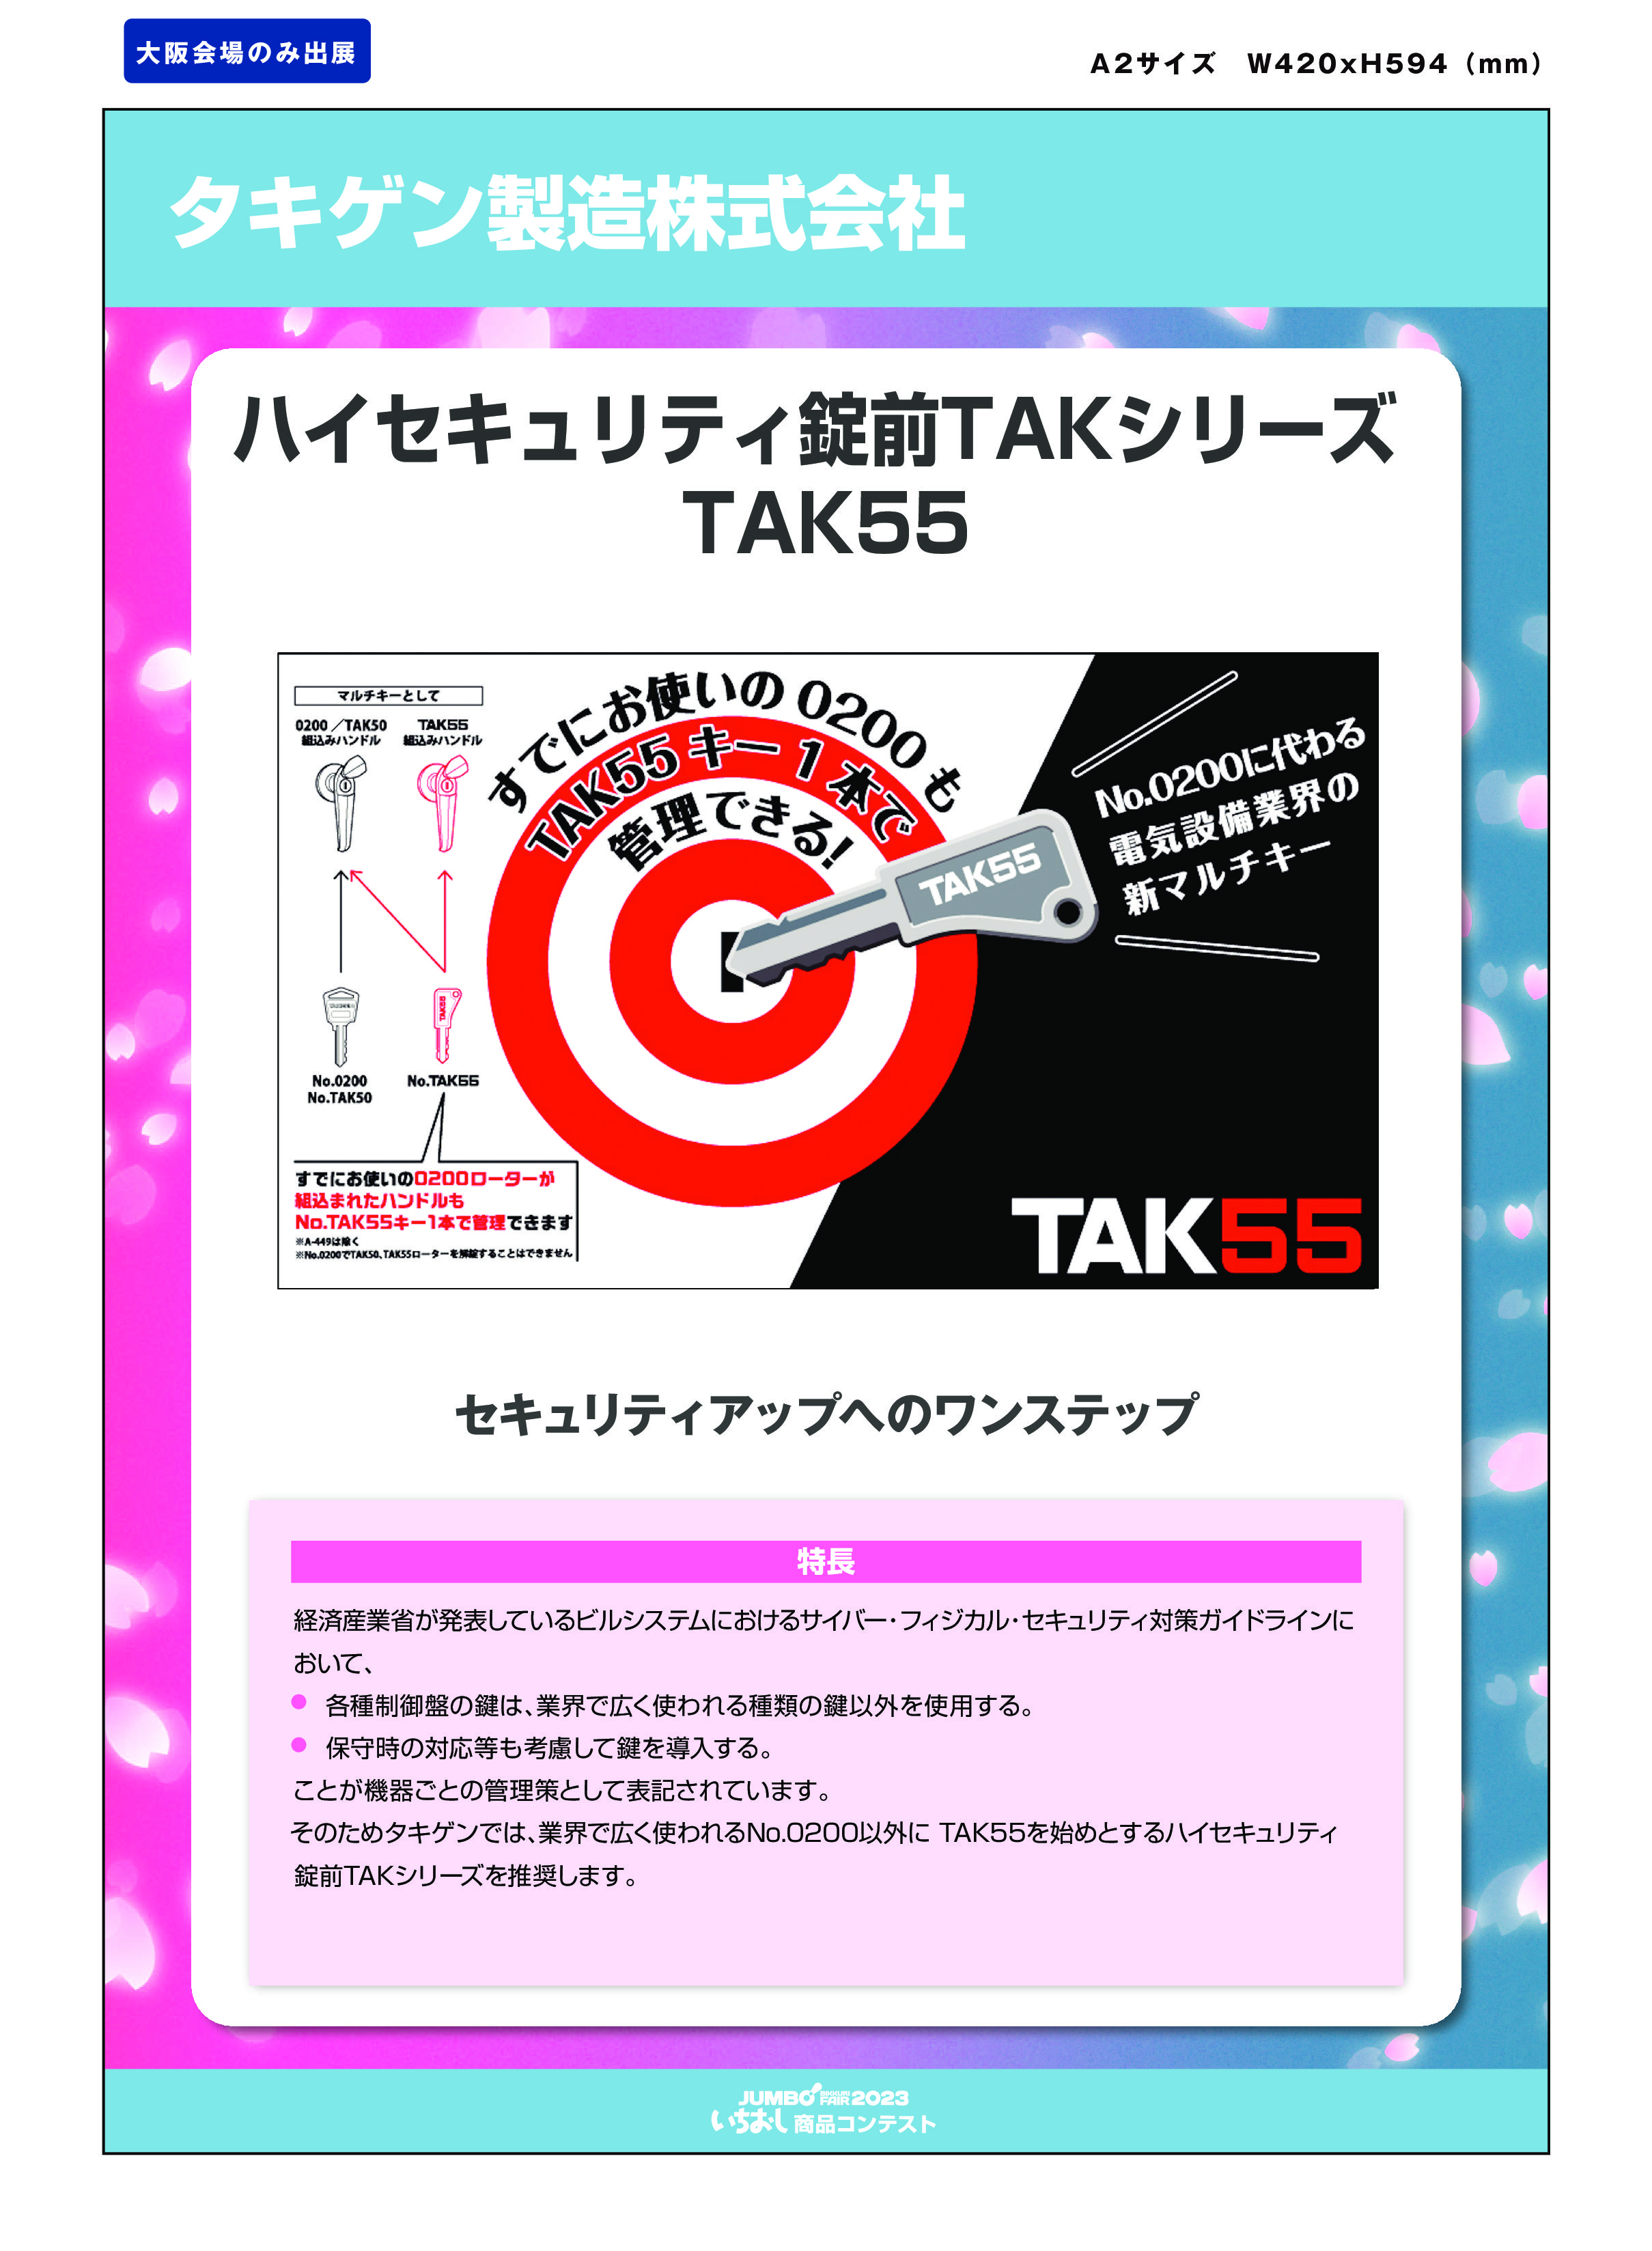 「ハイセキュリテイ錠前TAKシリーズTAK55」タキゲン製造株式会社の画像